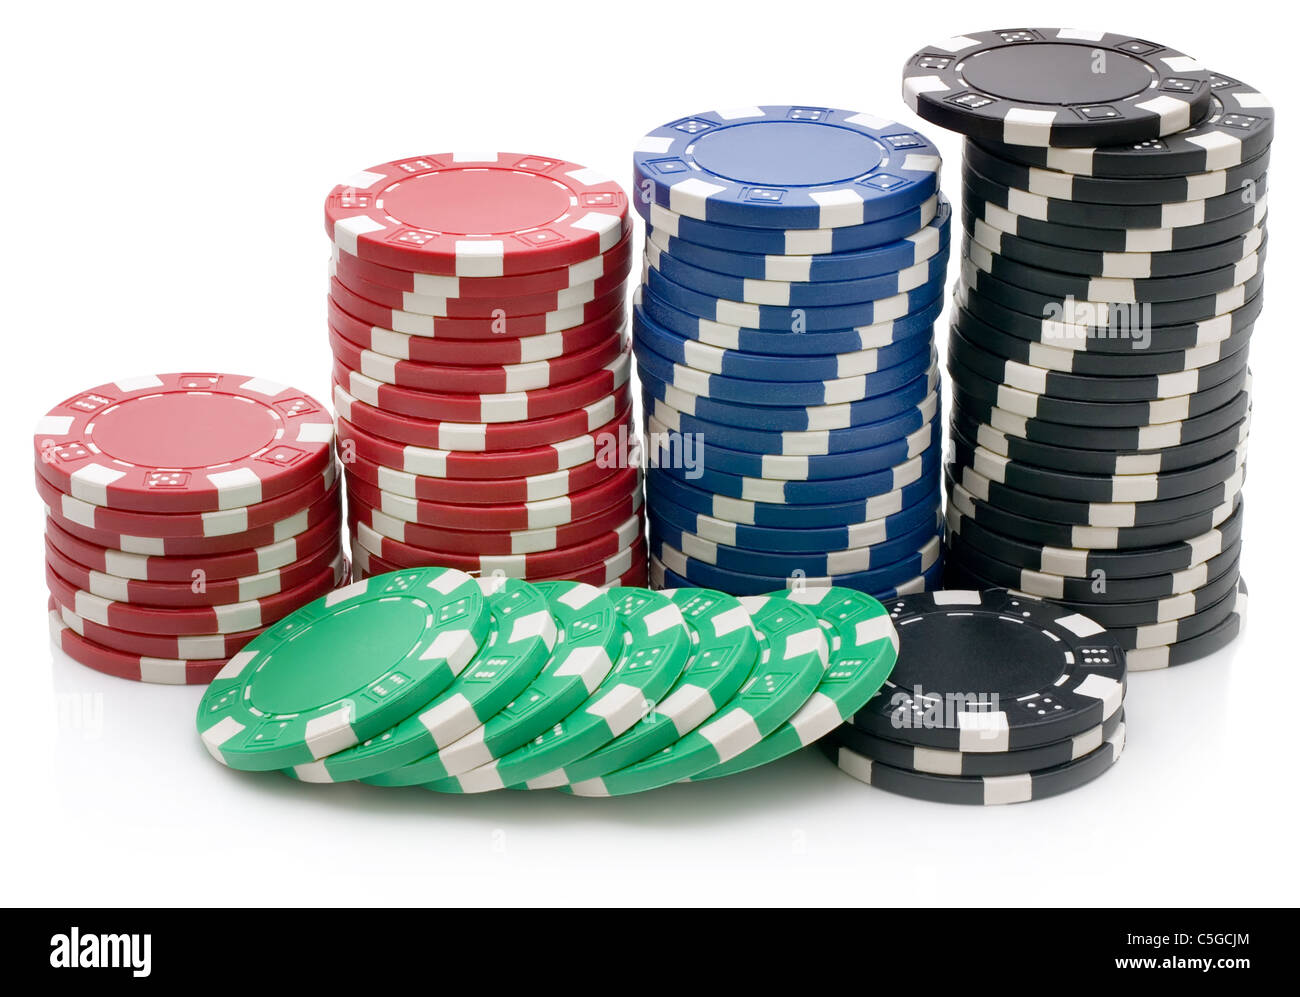 Fiches per poker immagini e fotografie stock ad alta risoluzione - Alamy